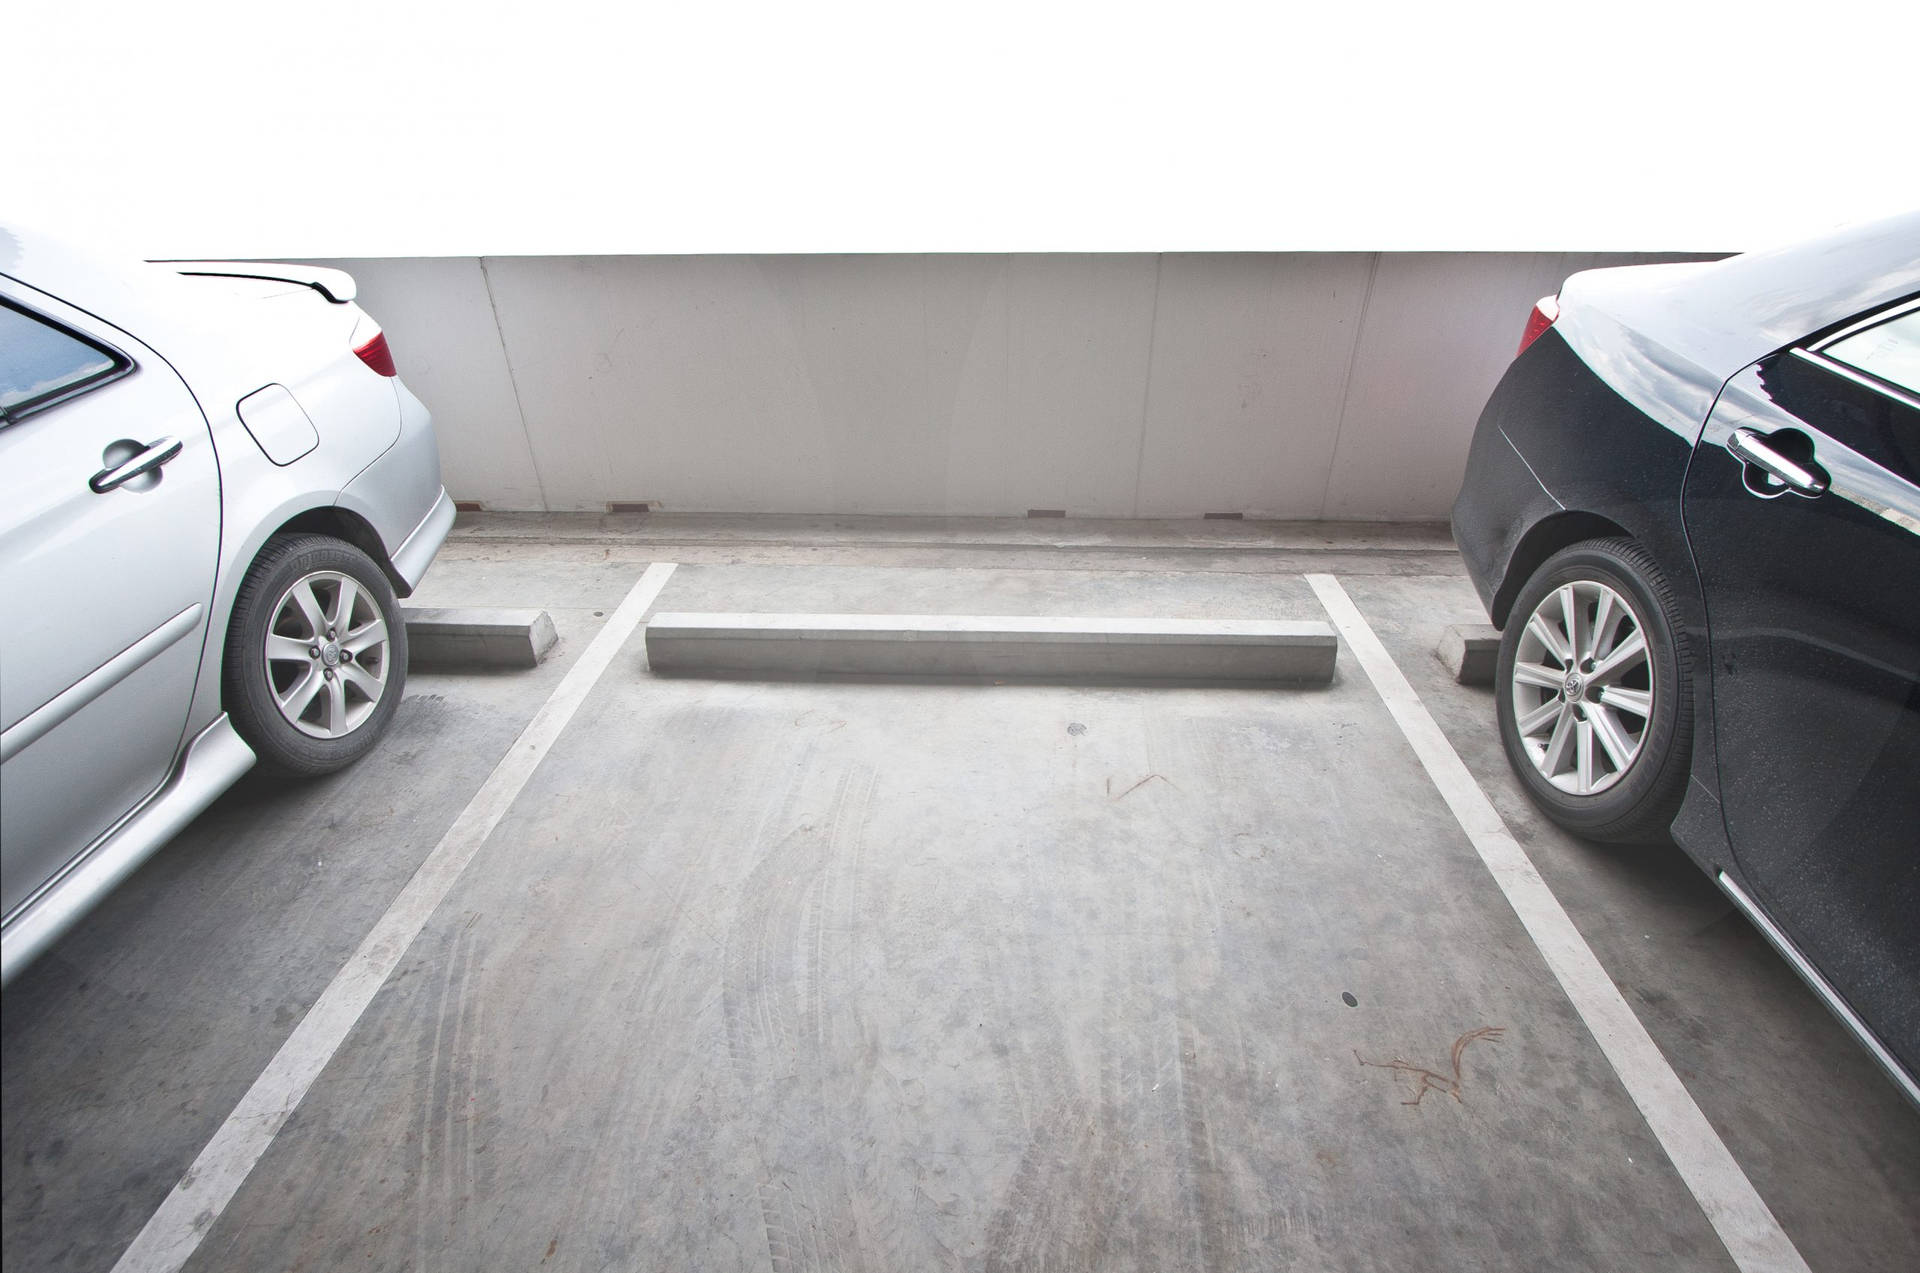 Verfügbarerparkplatz Zwischen Zwei Autos Wallpaper